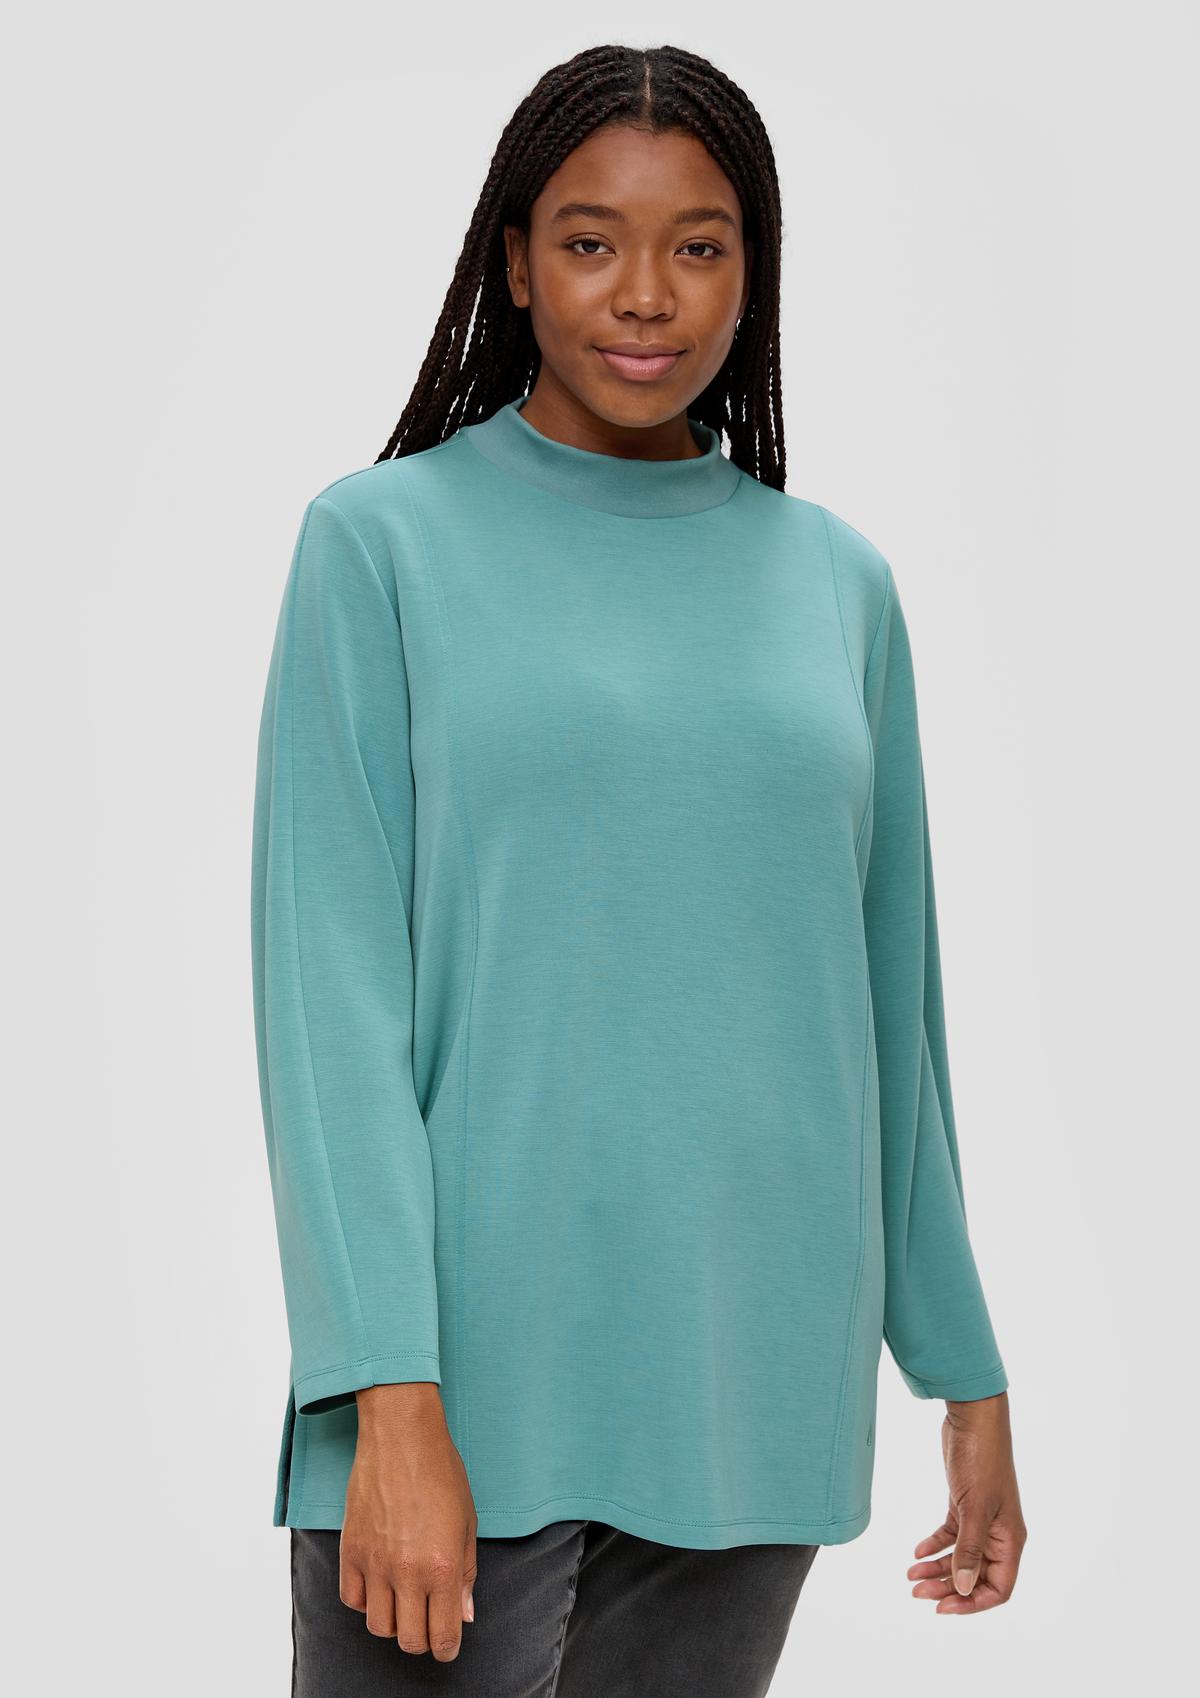 SALE: for Women Sweatshirts